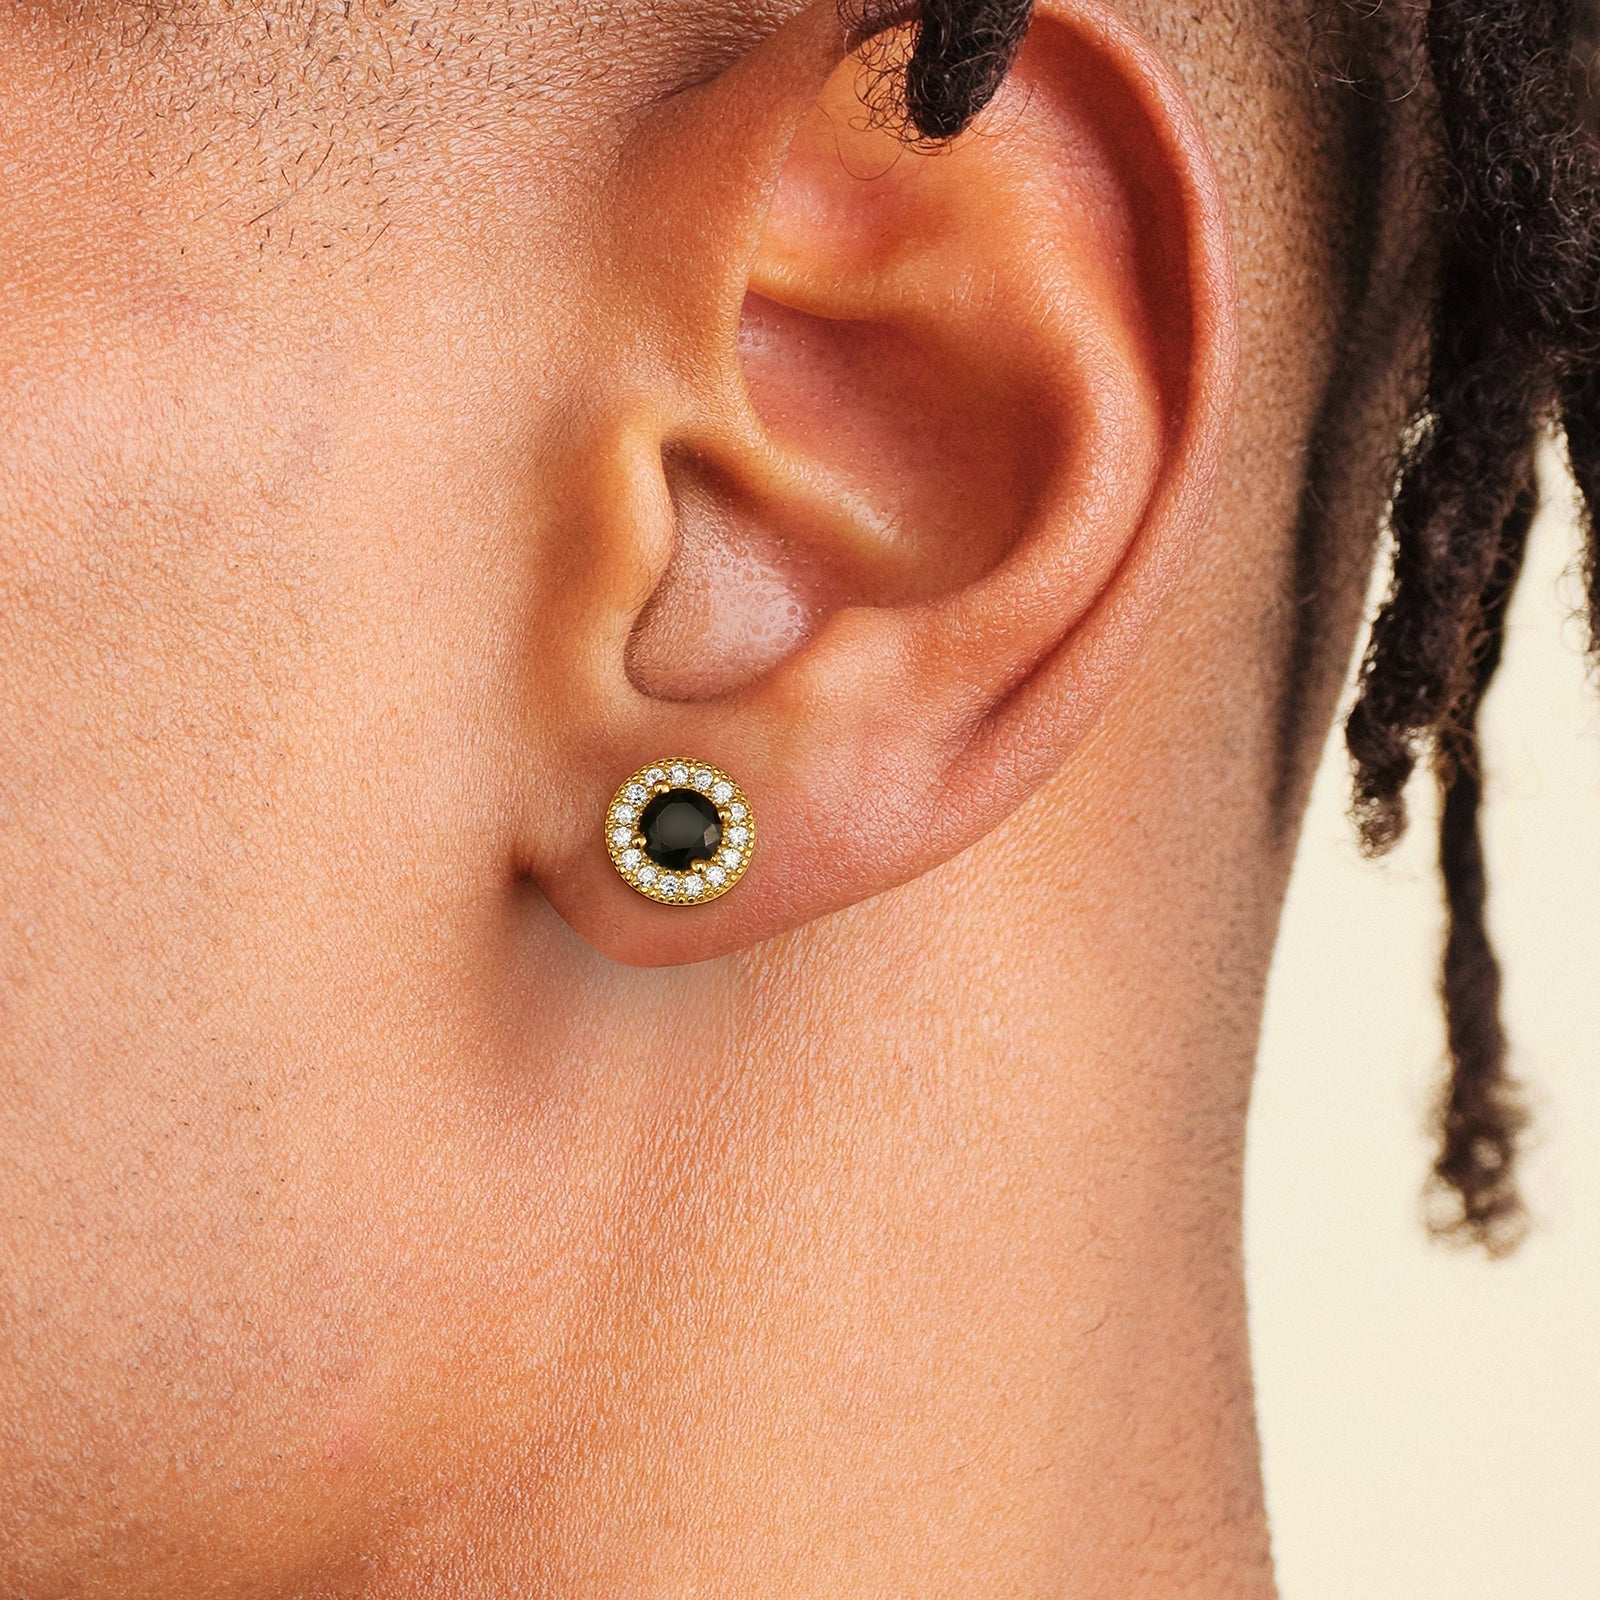 Wholesale Men's Earrings 7.5mm Black Round Iced Stud Earrings for Men